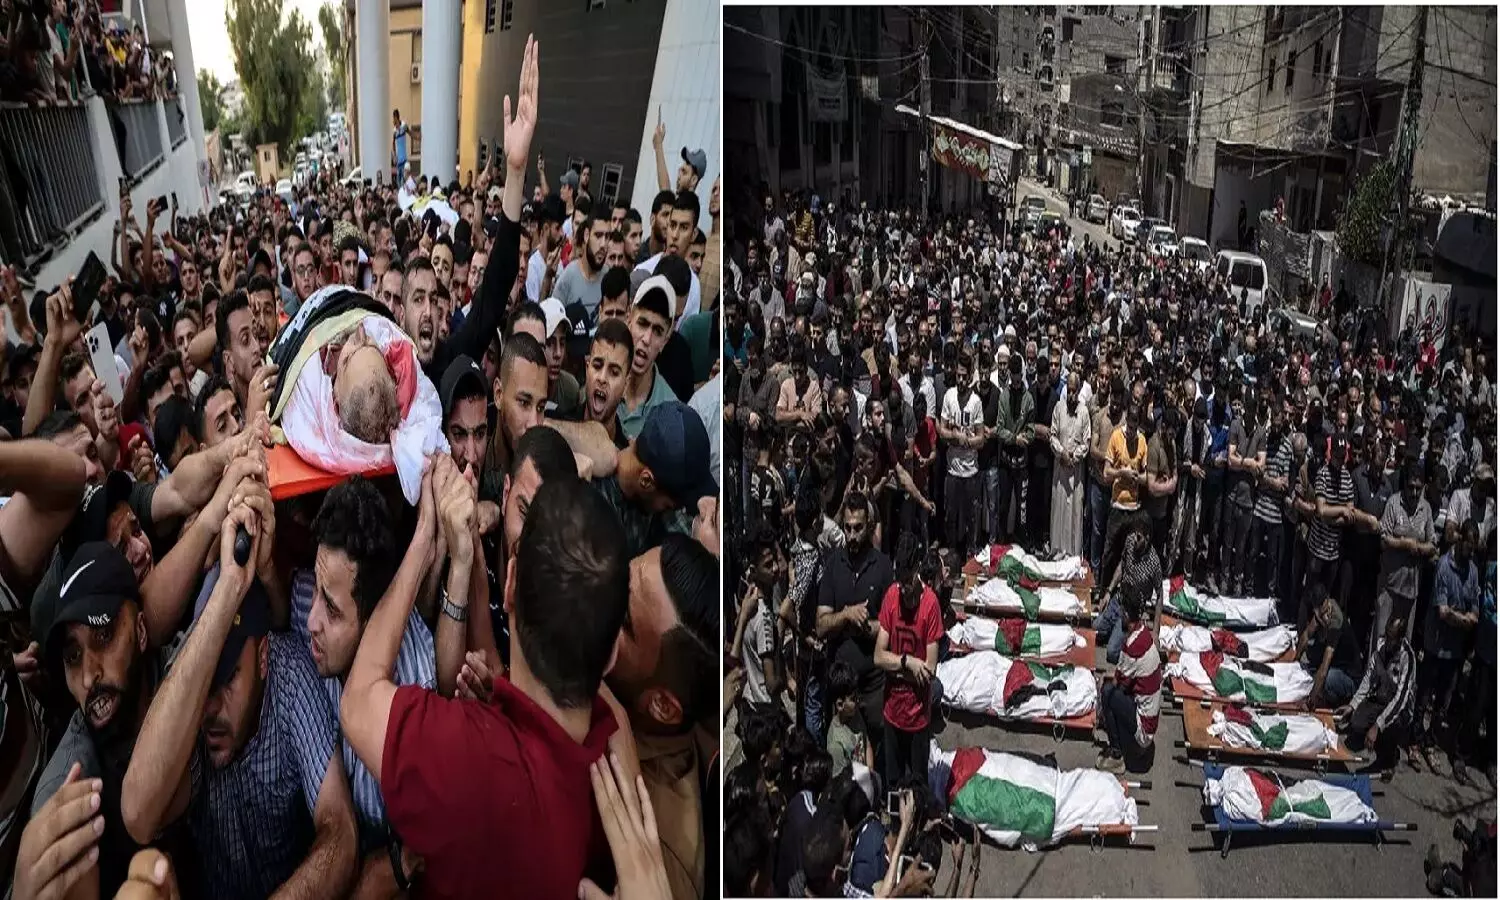 What Is Happening In Israel: इजराइल ने फिलिस्तीन पर किया एयरस्ट्राइक! हमास का कमांडर तायसीर जबारी मारा गया